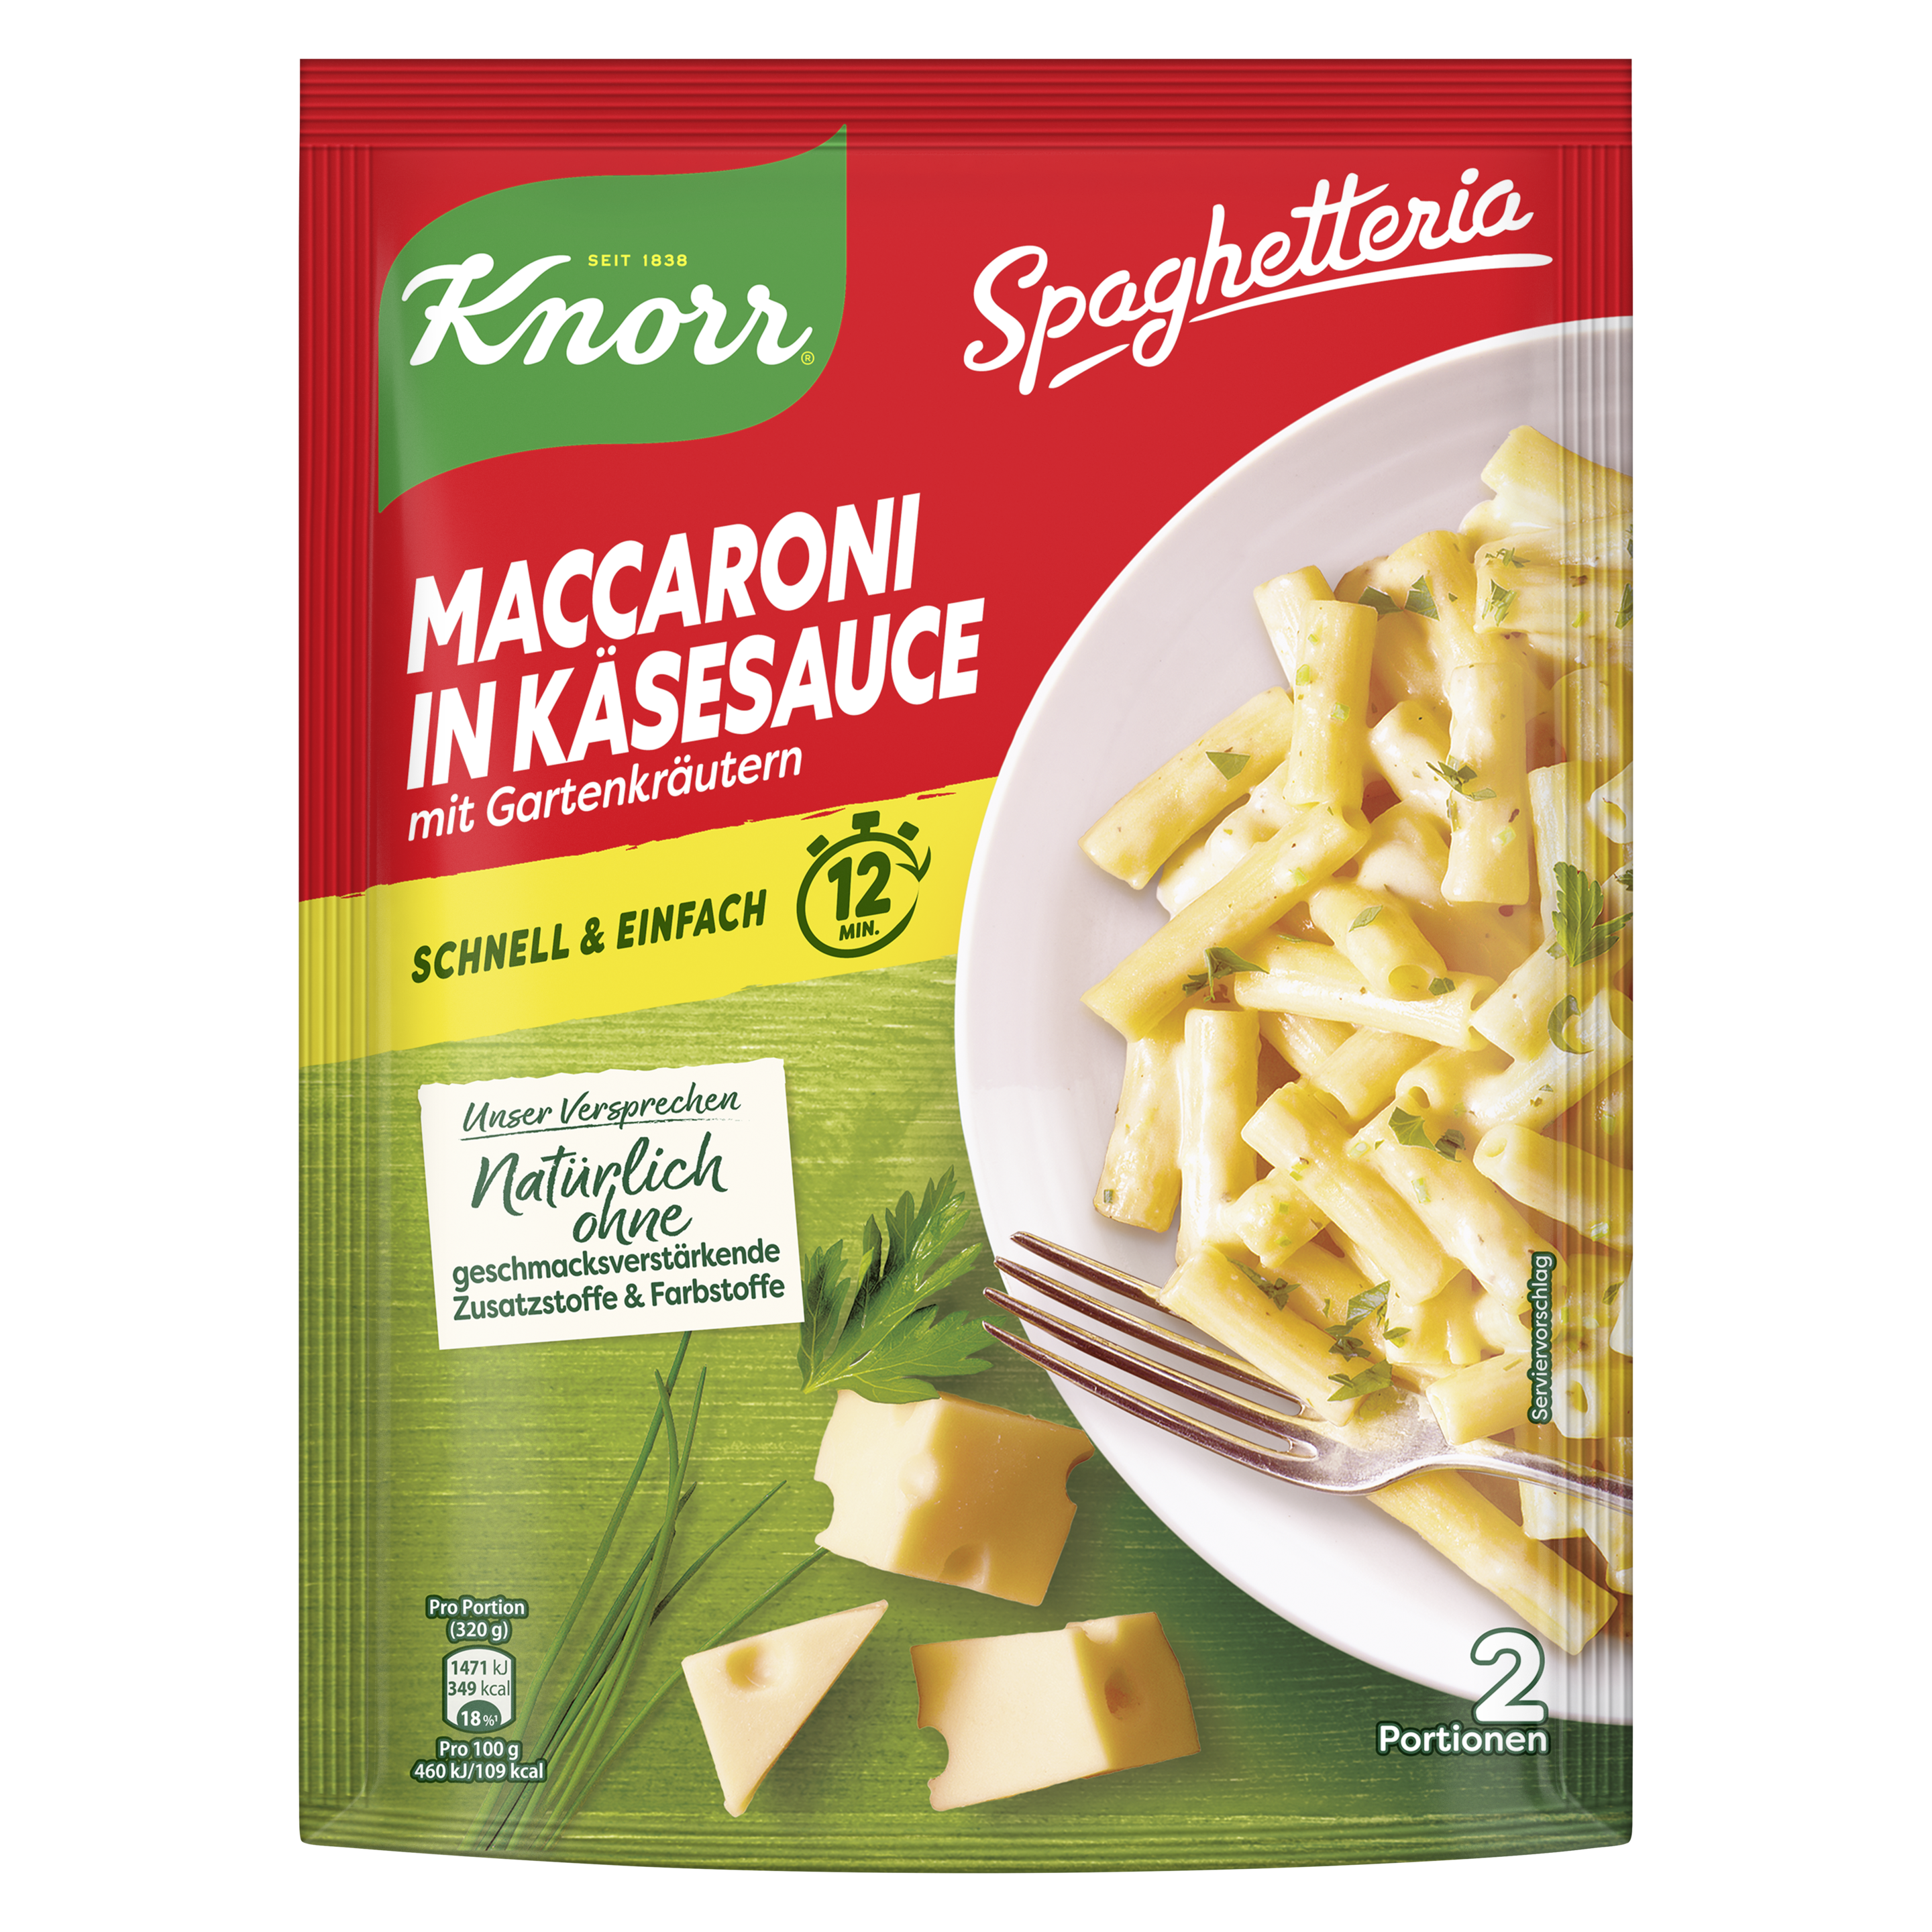 Knorr Spaghetteria Maccaroni in Käsesauce 166g